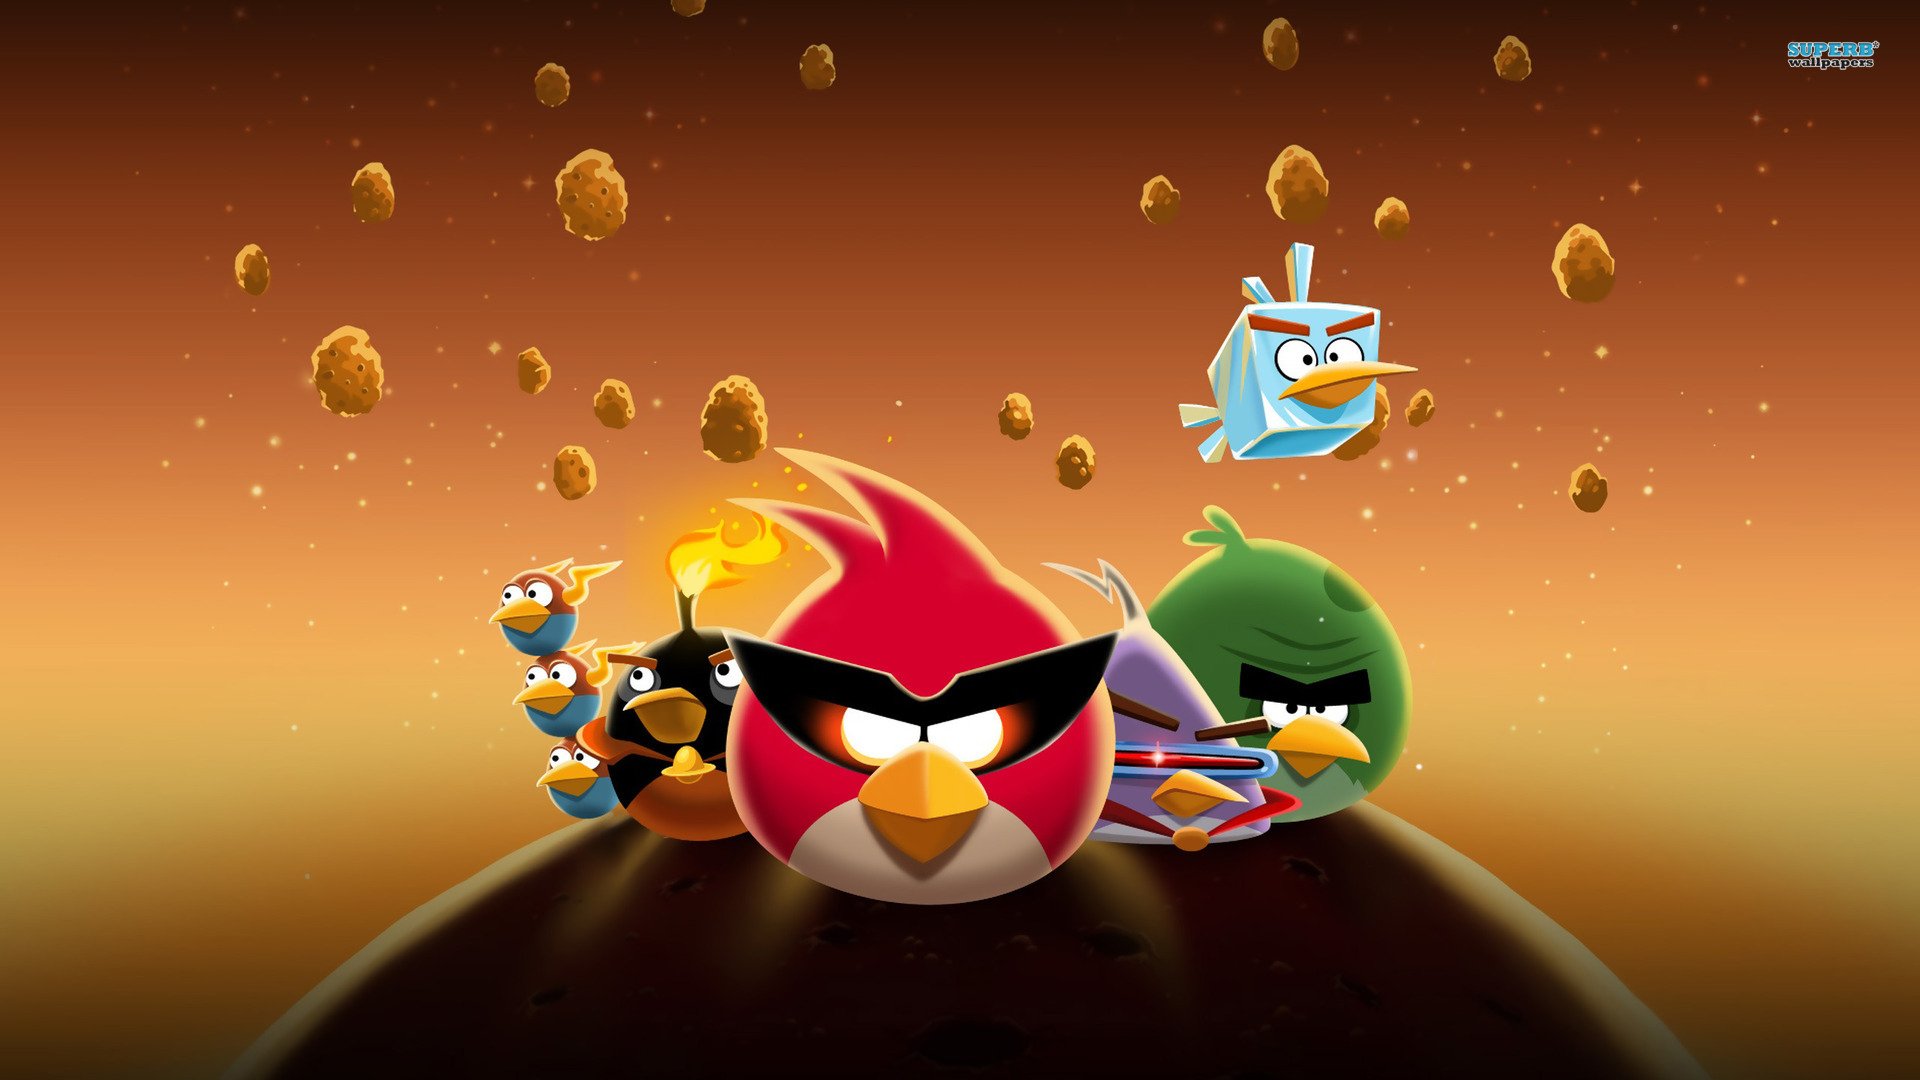 karakter gambar angry bird